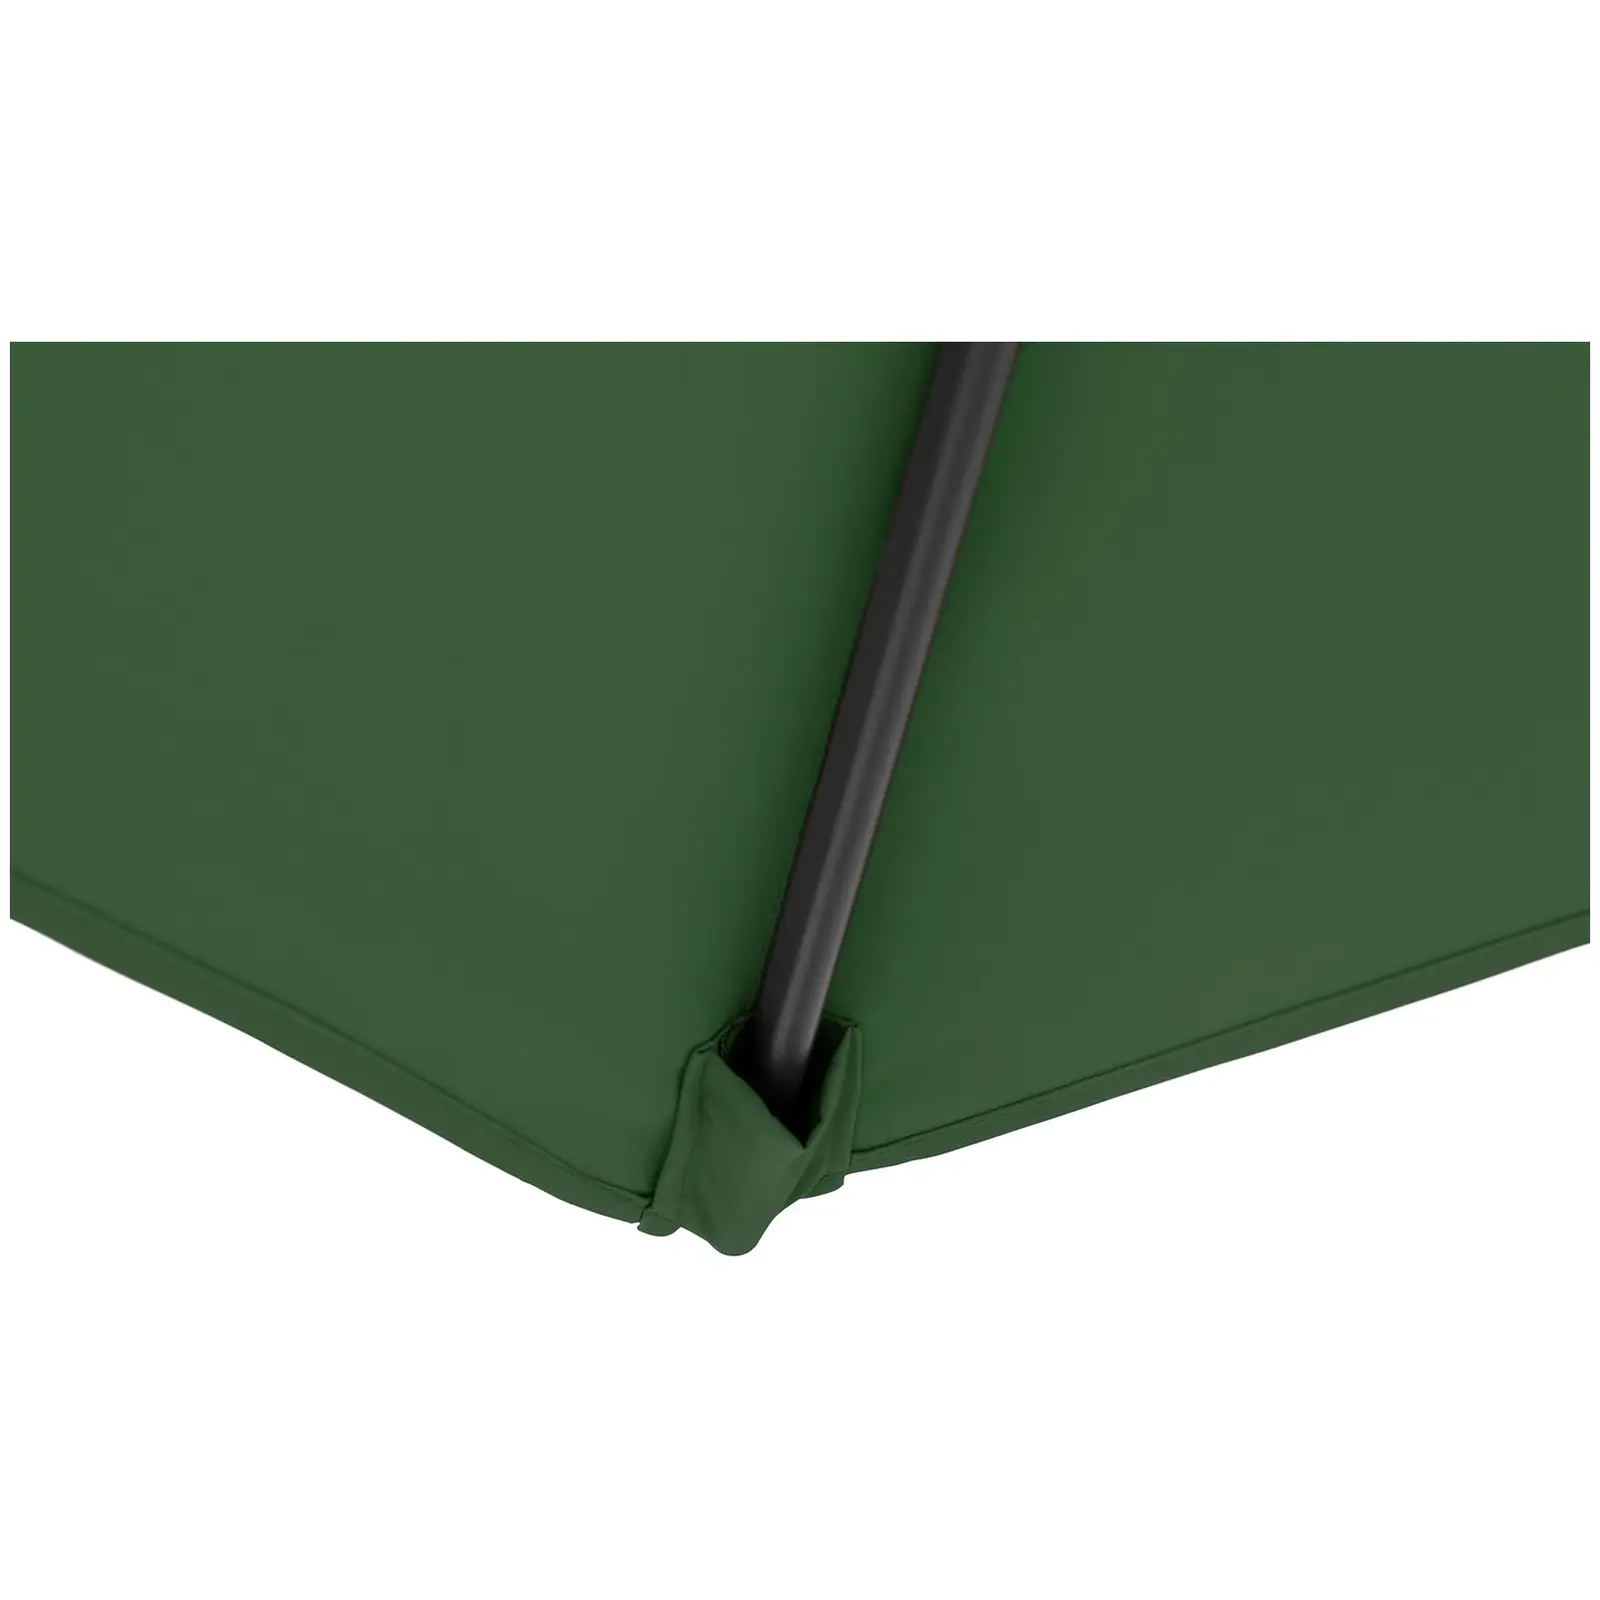 Andrahandssortering Hängparasoll - grönt - runt - Ø 300 cm - kan lutas